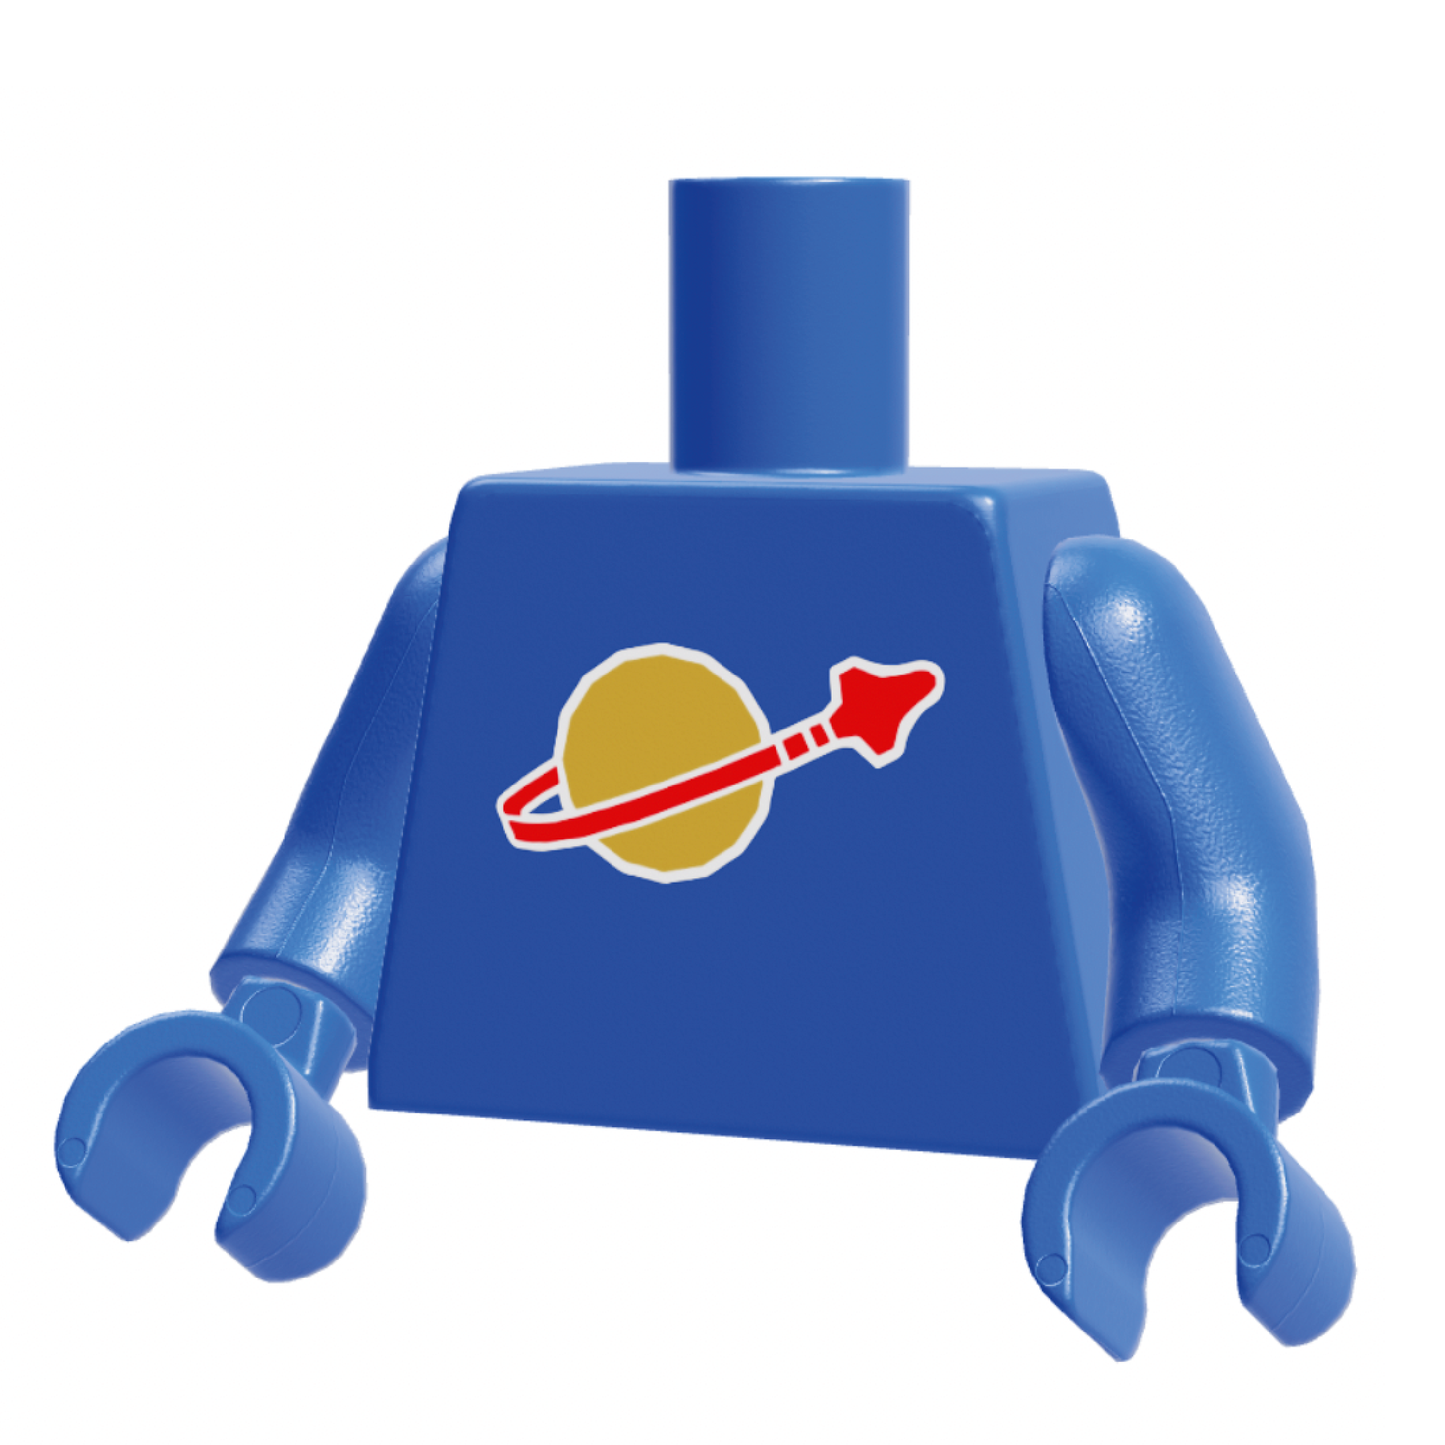 Torso espacial clásico estampado personalizado azul